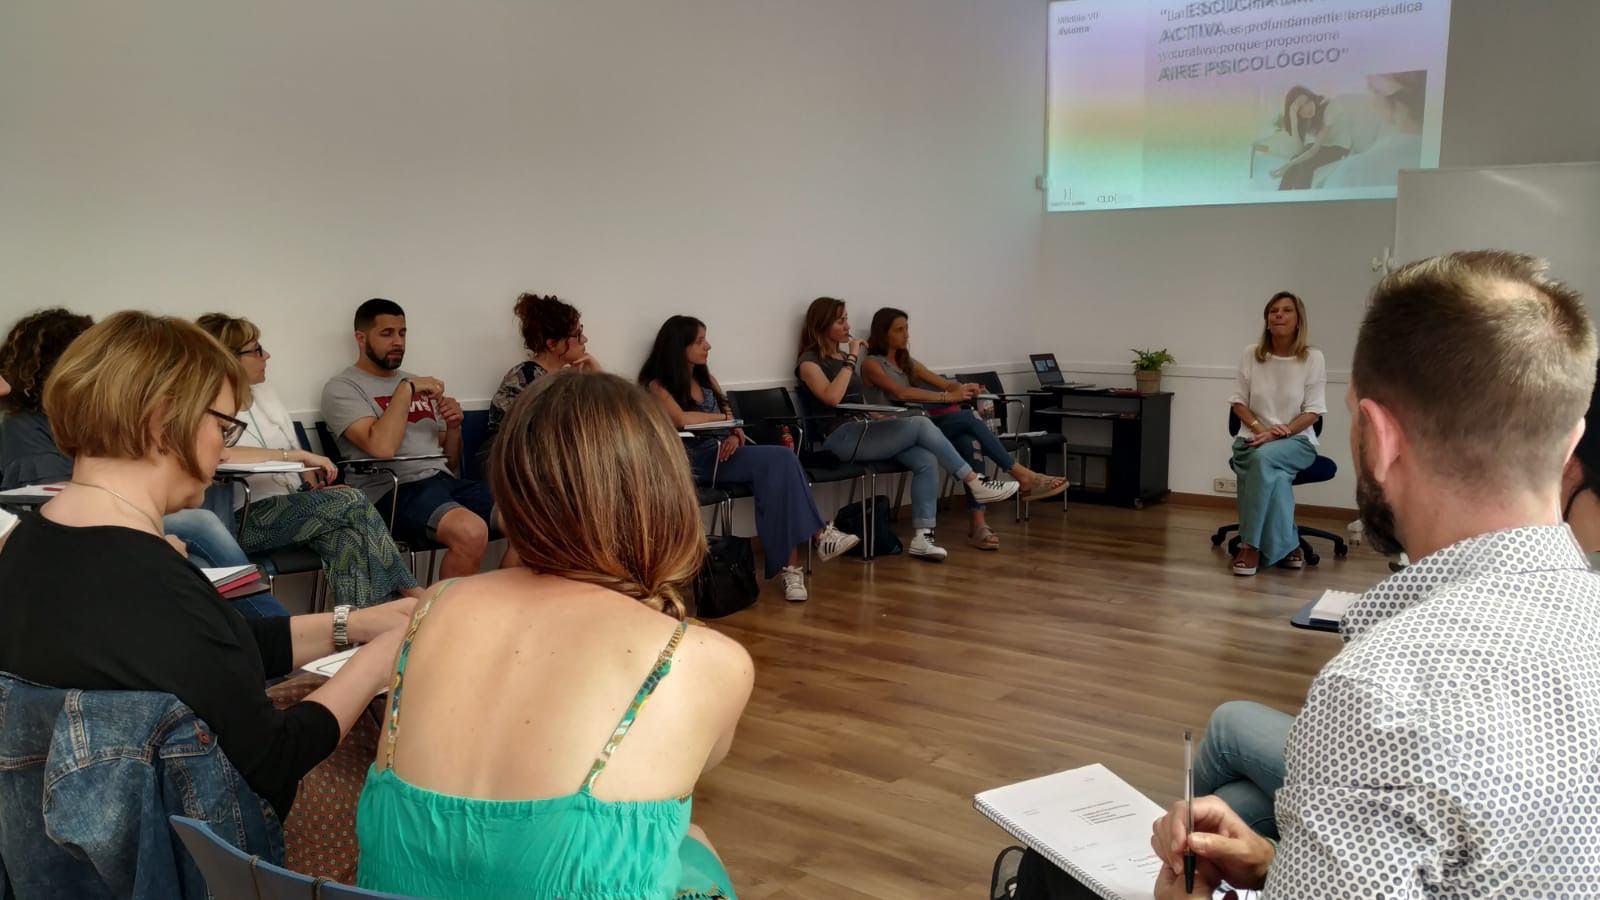 Foto 21 de Psicología y coaching en Barcelona | Inés de Caralt Psicóloga